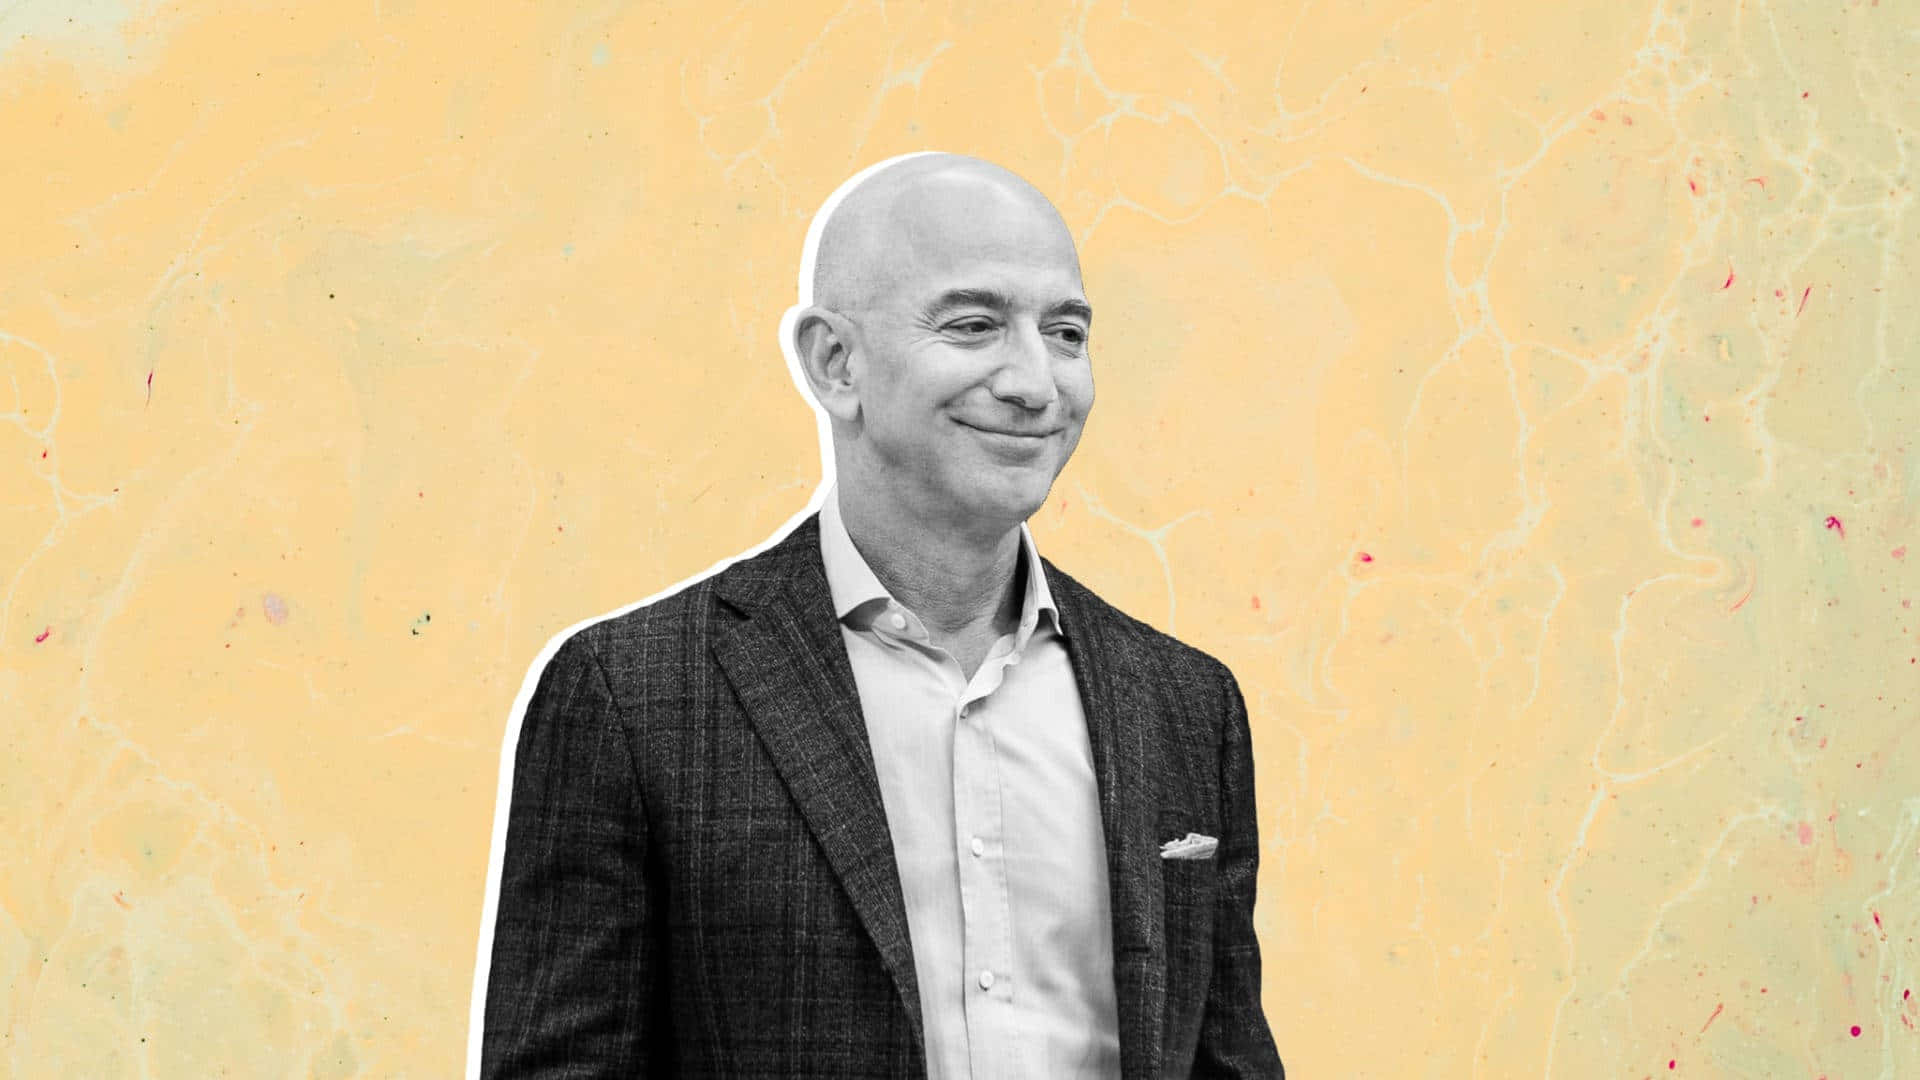 A visionary entrepreneur - Jeff Bezos